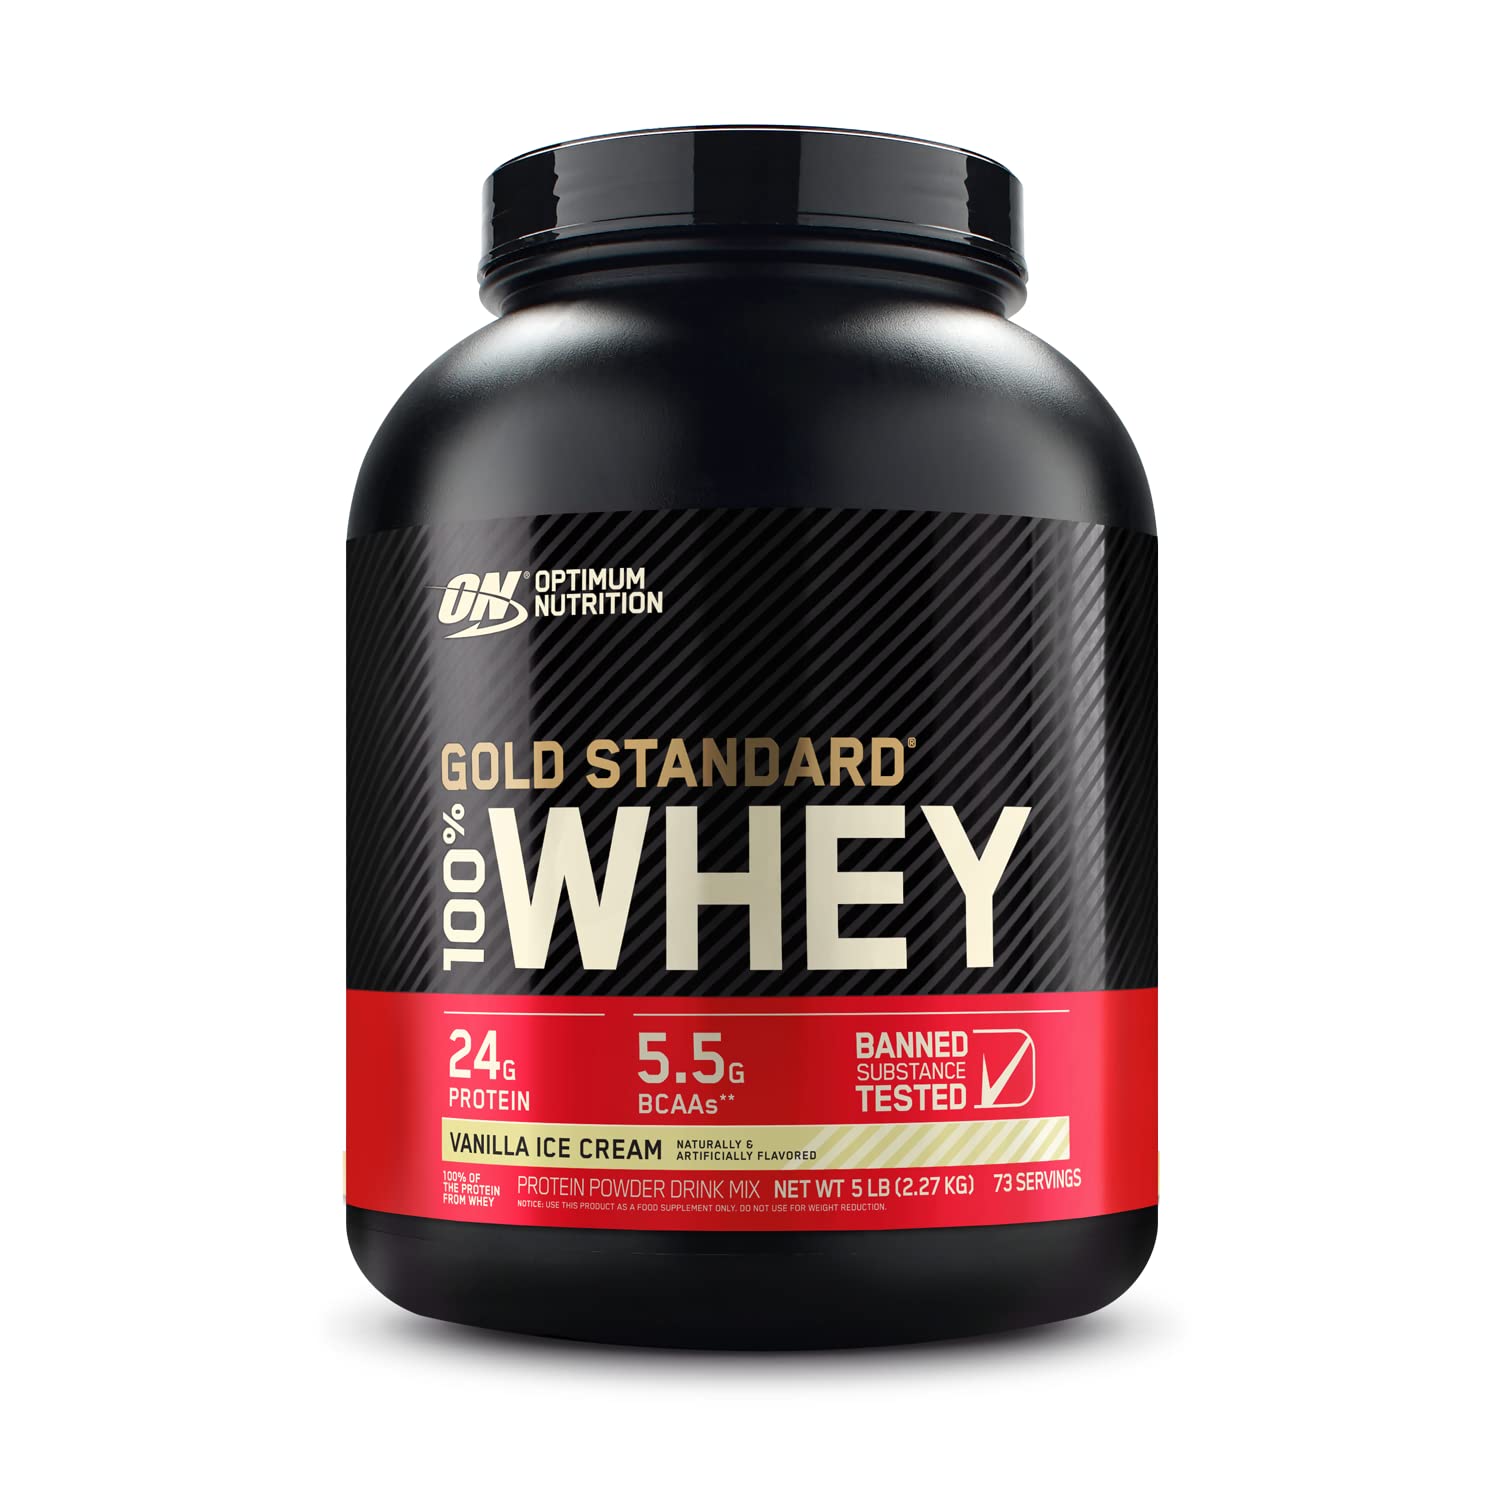 Optimum Nutrition Gold Standard 100% Whey Protein Powder, Vanilla Ice Cream, 5 Pound  is $30 at Amazon